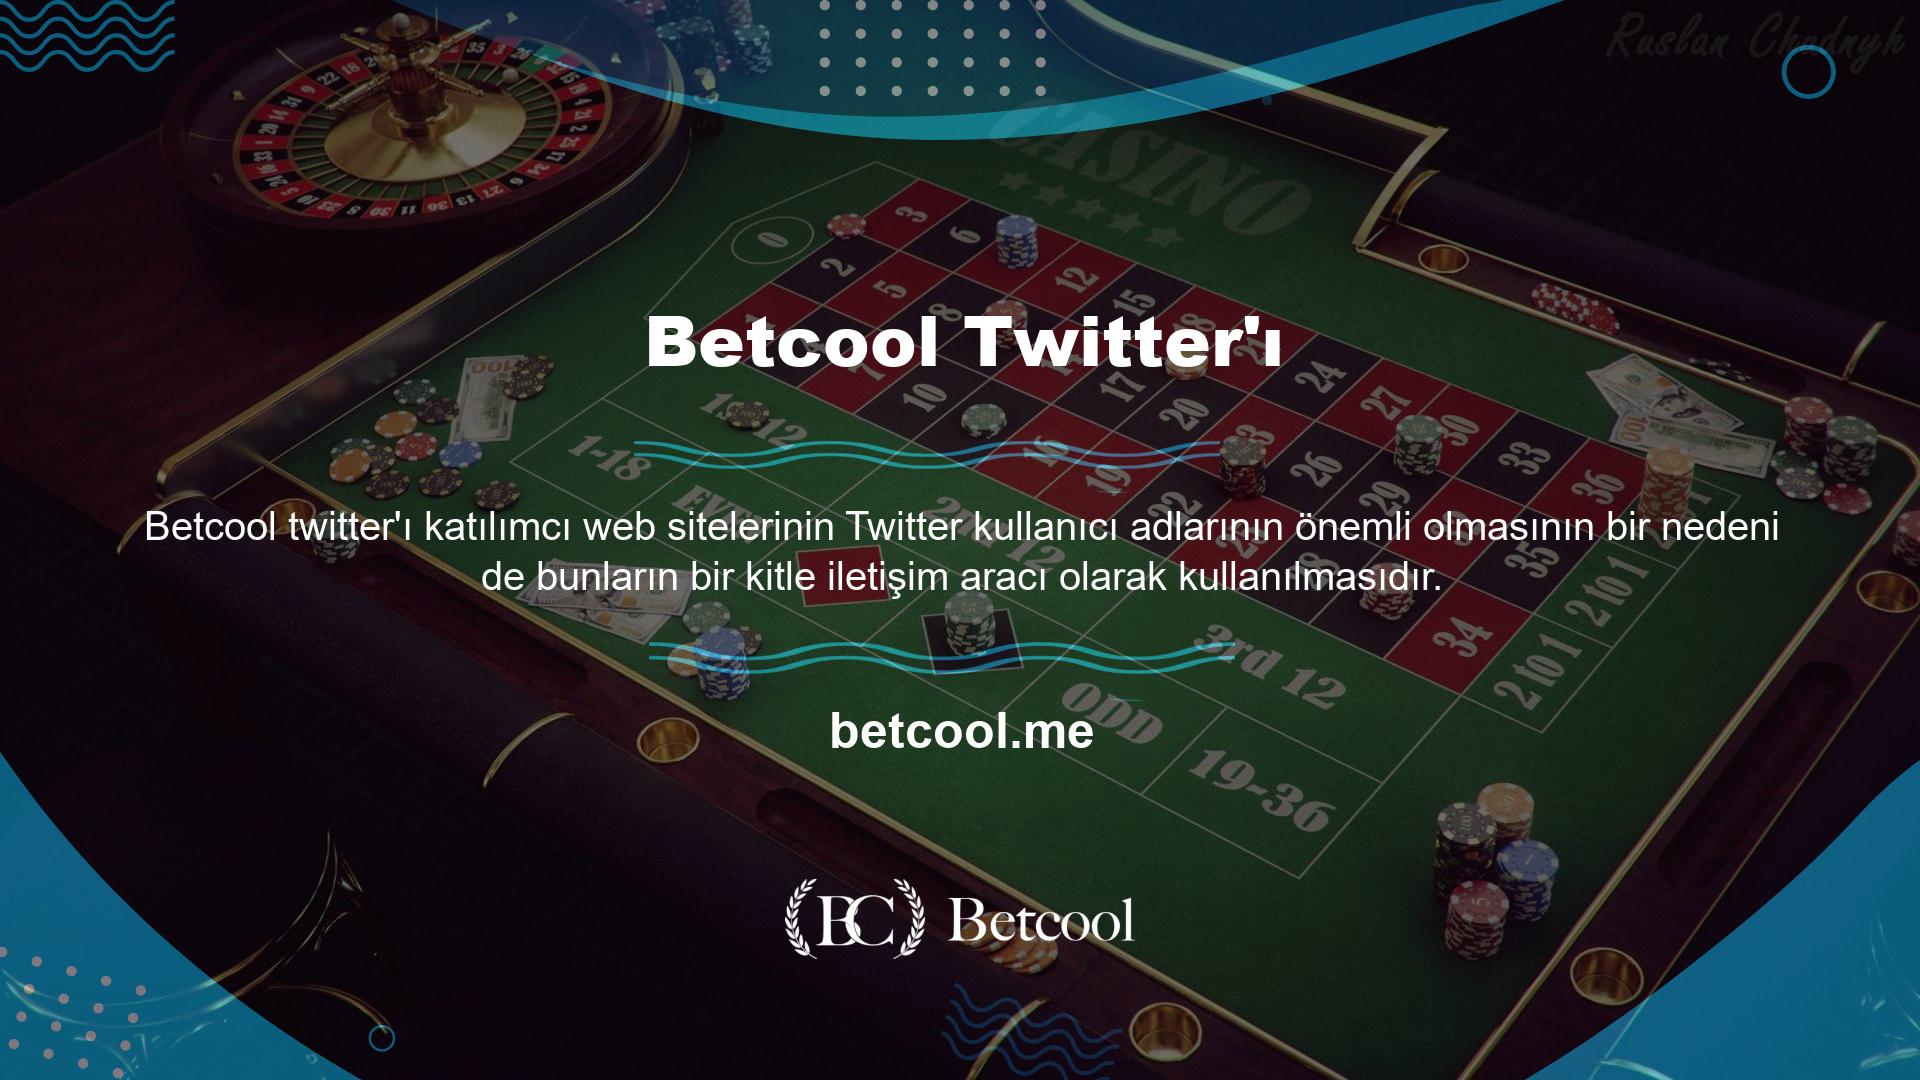 Güncel casino sitesi giriş adresi bilgileri, casino sitesinin Twitter adresi üzerinden düzenli olarak paylaşılmaktadır